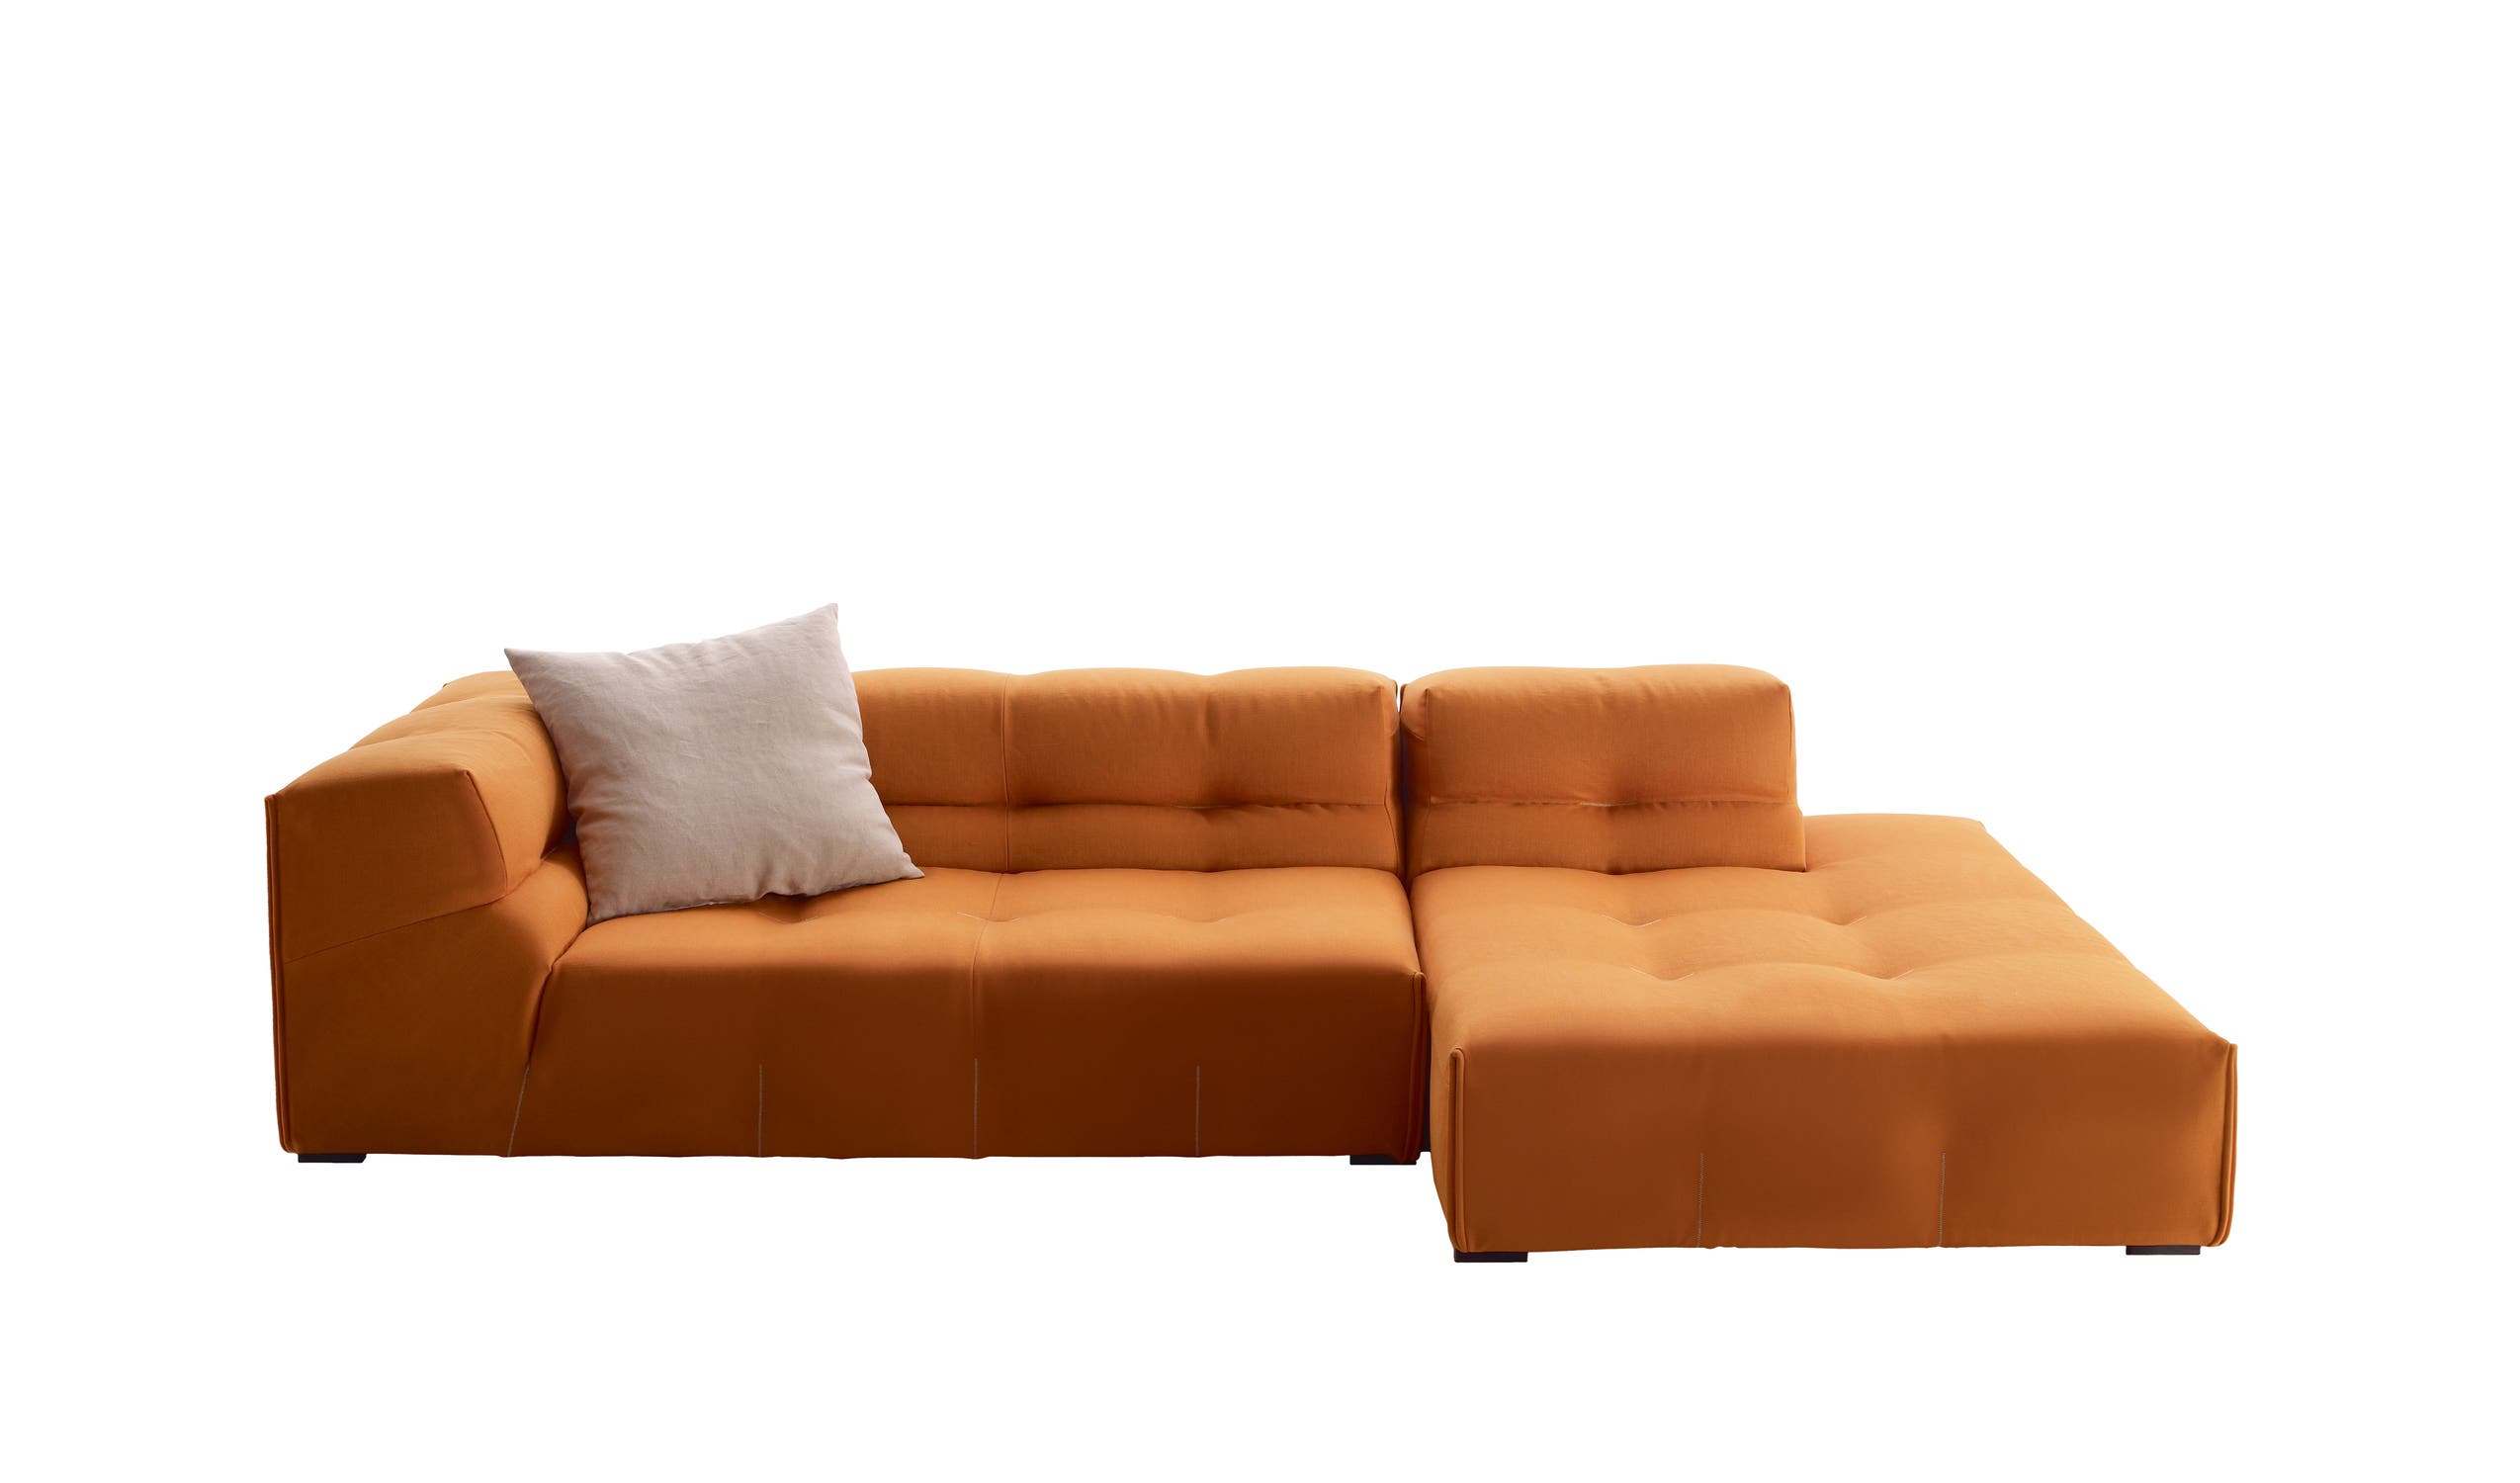 Modern designer italian sofas - Tufty-Too Sofas